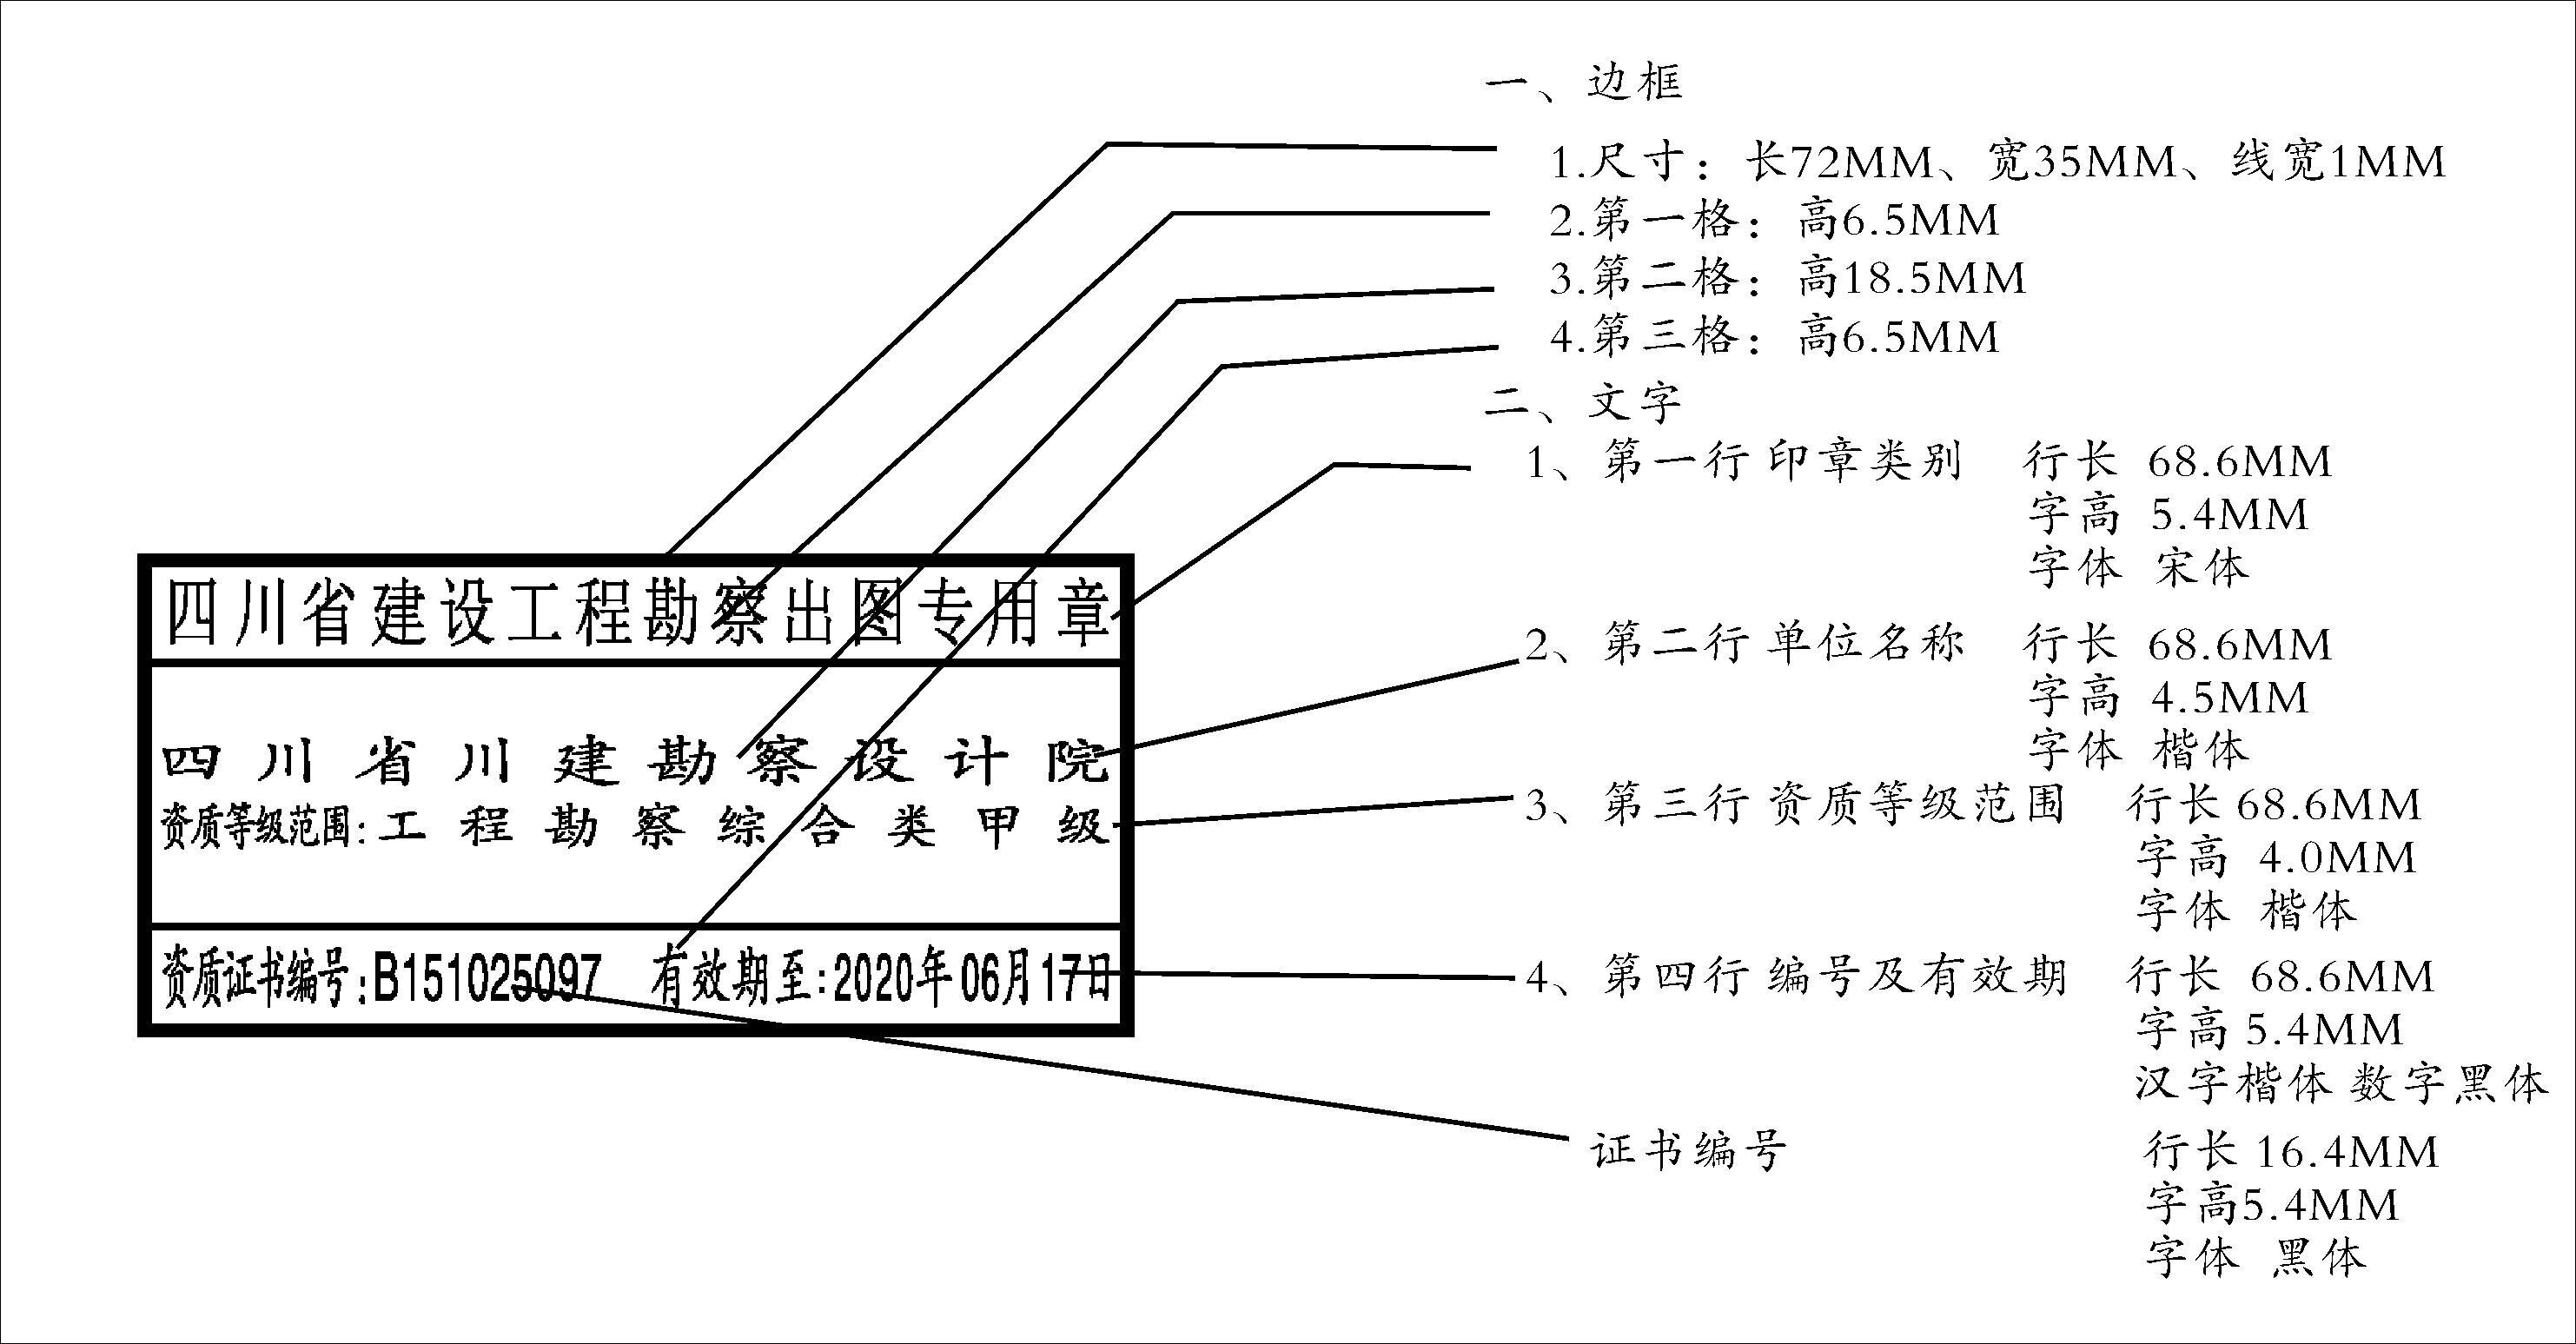 #本地同城執業印章#四川省建設工程勘察出圖專用章樣式、規格